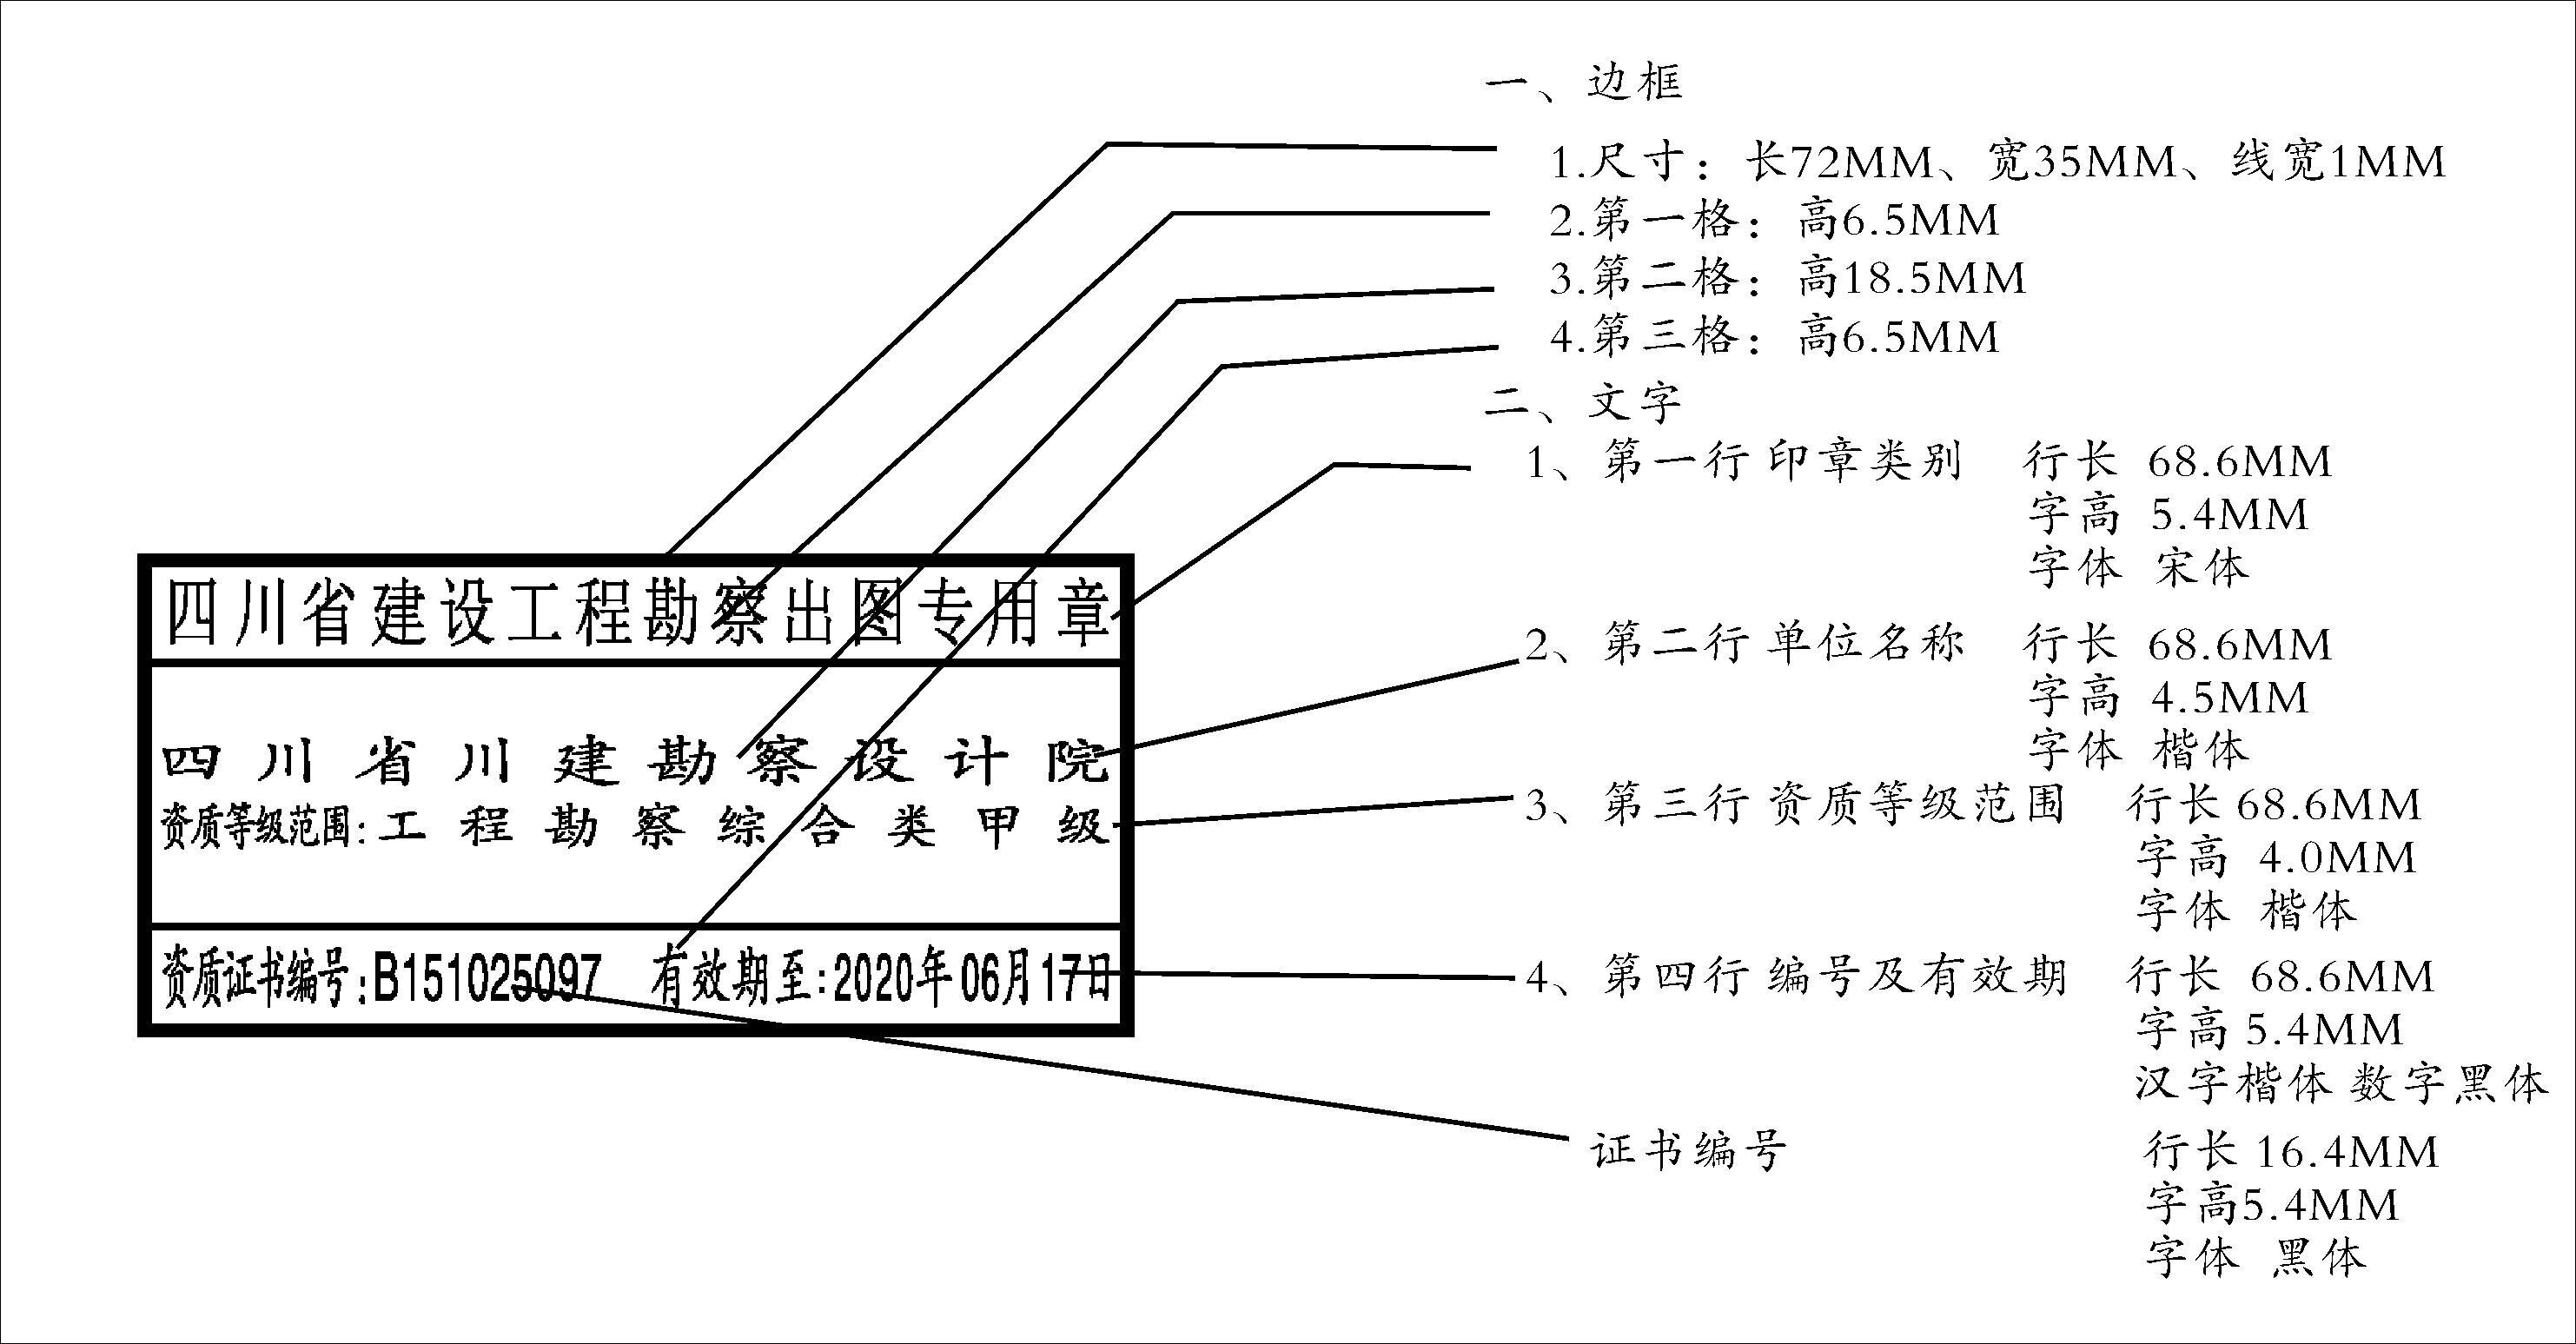 #本地同城執業印章#四川省建設工程勘察出圖專用章樣式、規格